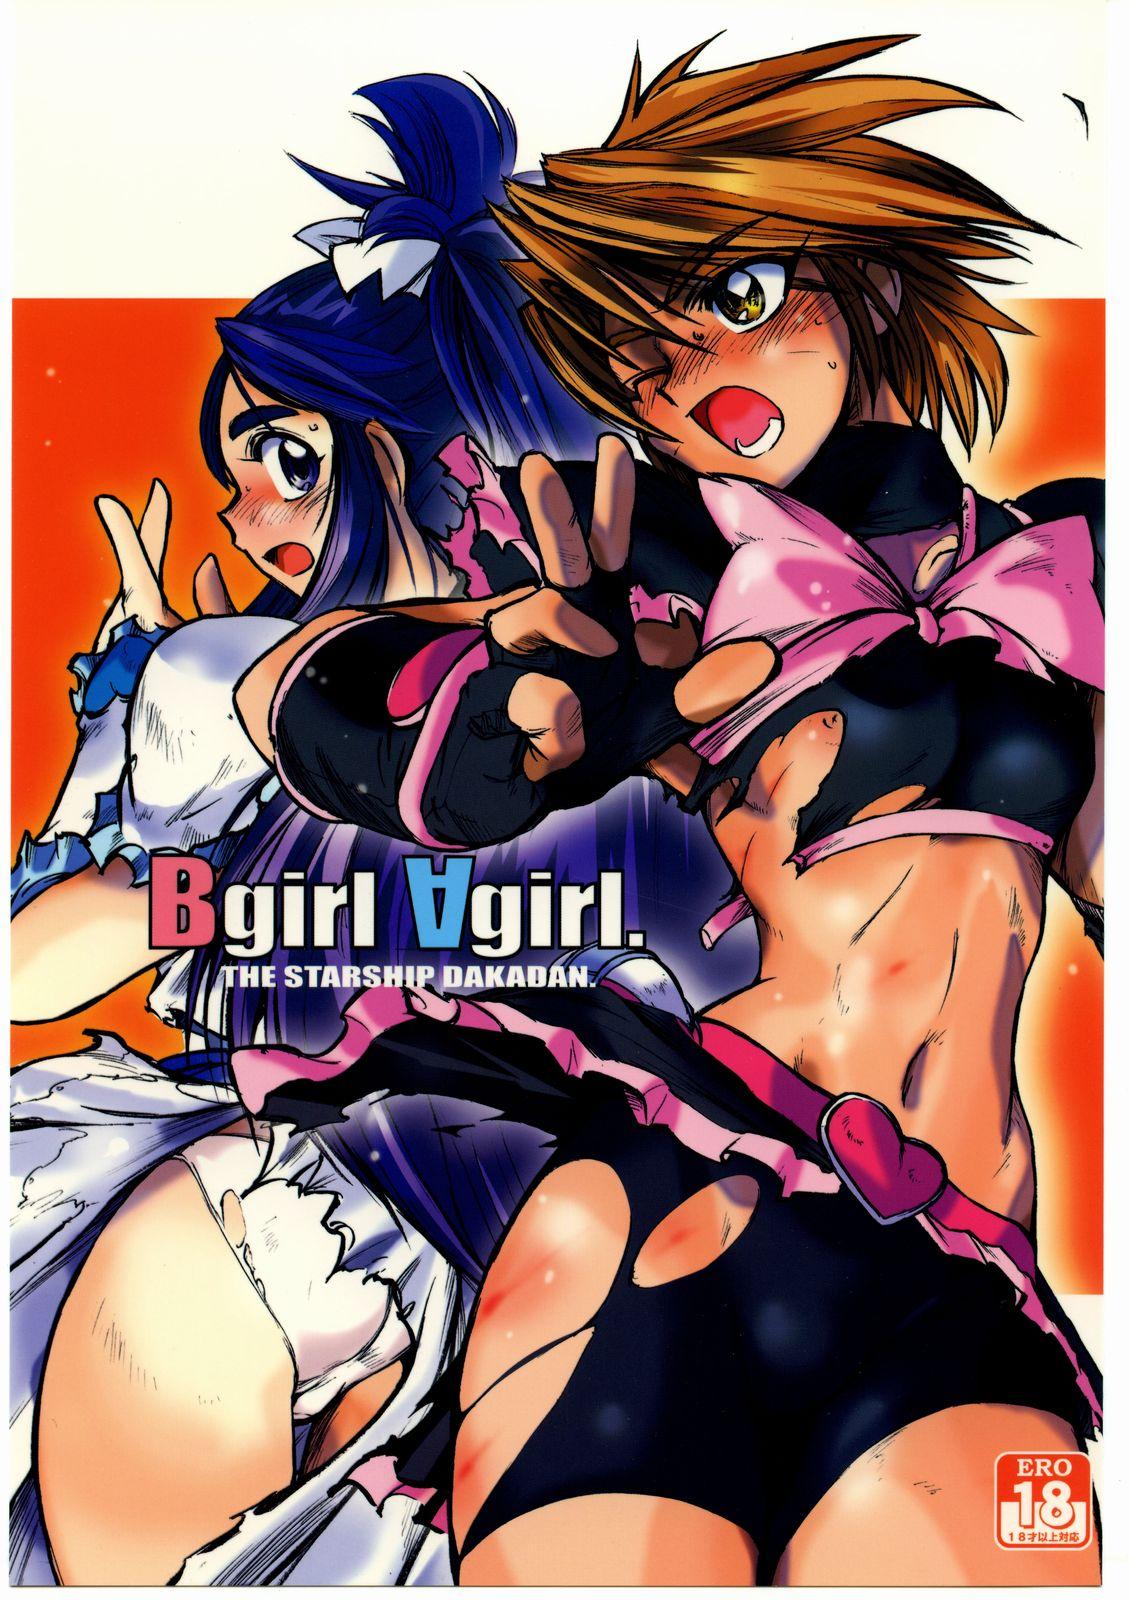 Latin Bgirl ∀girl - Pretty cure Class - Picture 1